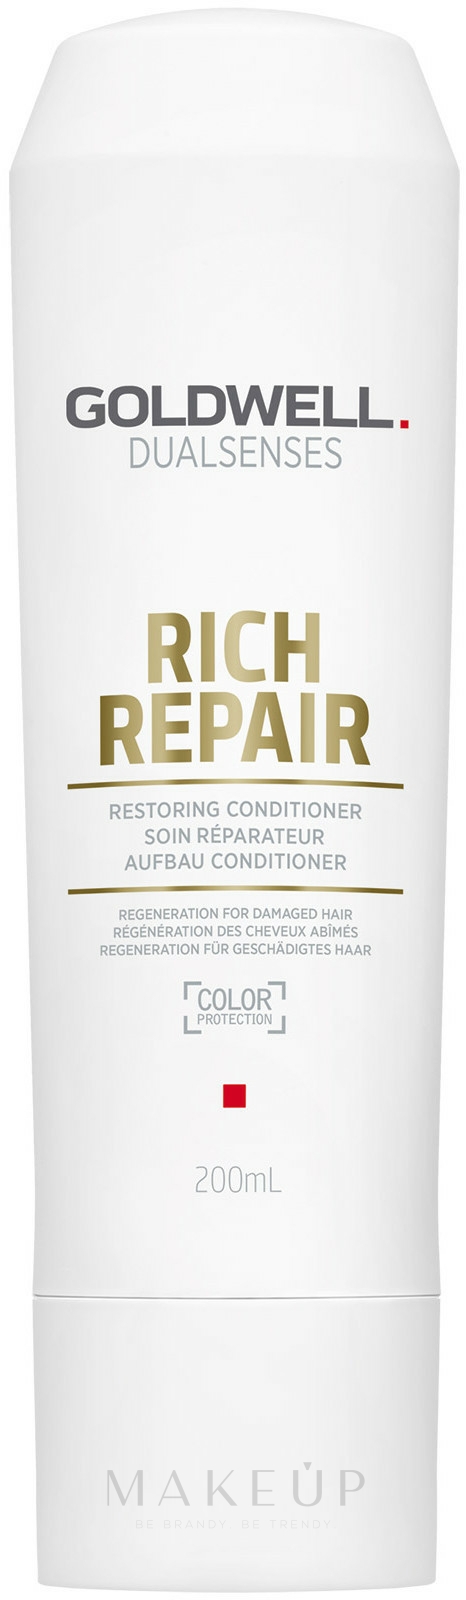 Haarspülung "Rich Repair" für trockenes, geschädigtes und gestresstes Haar - Goldwell Dualsenses Rich Repair Restoring Conditioner — Foto 200 ml